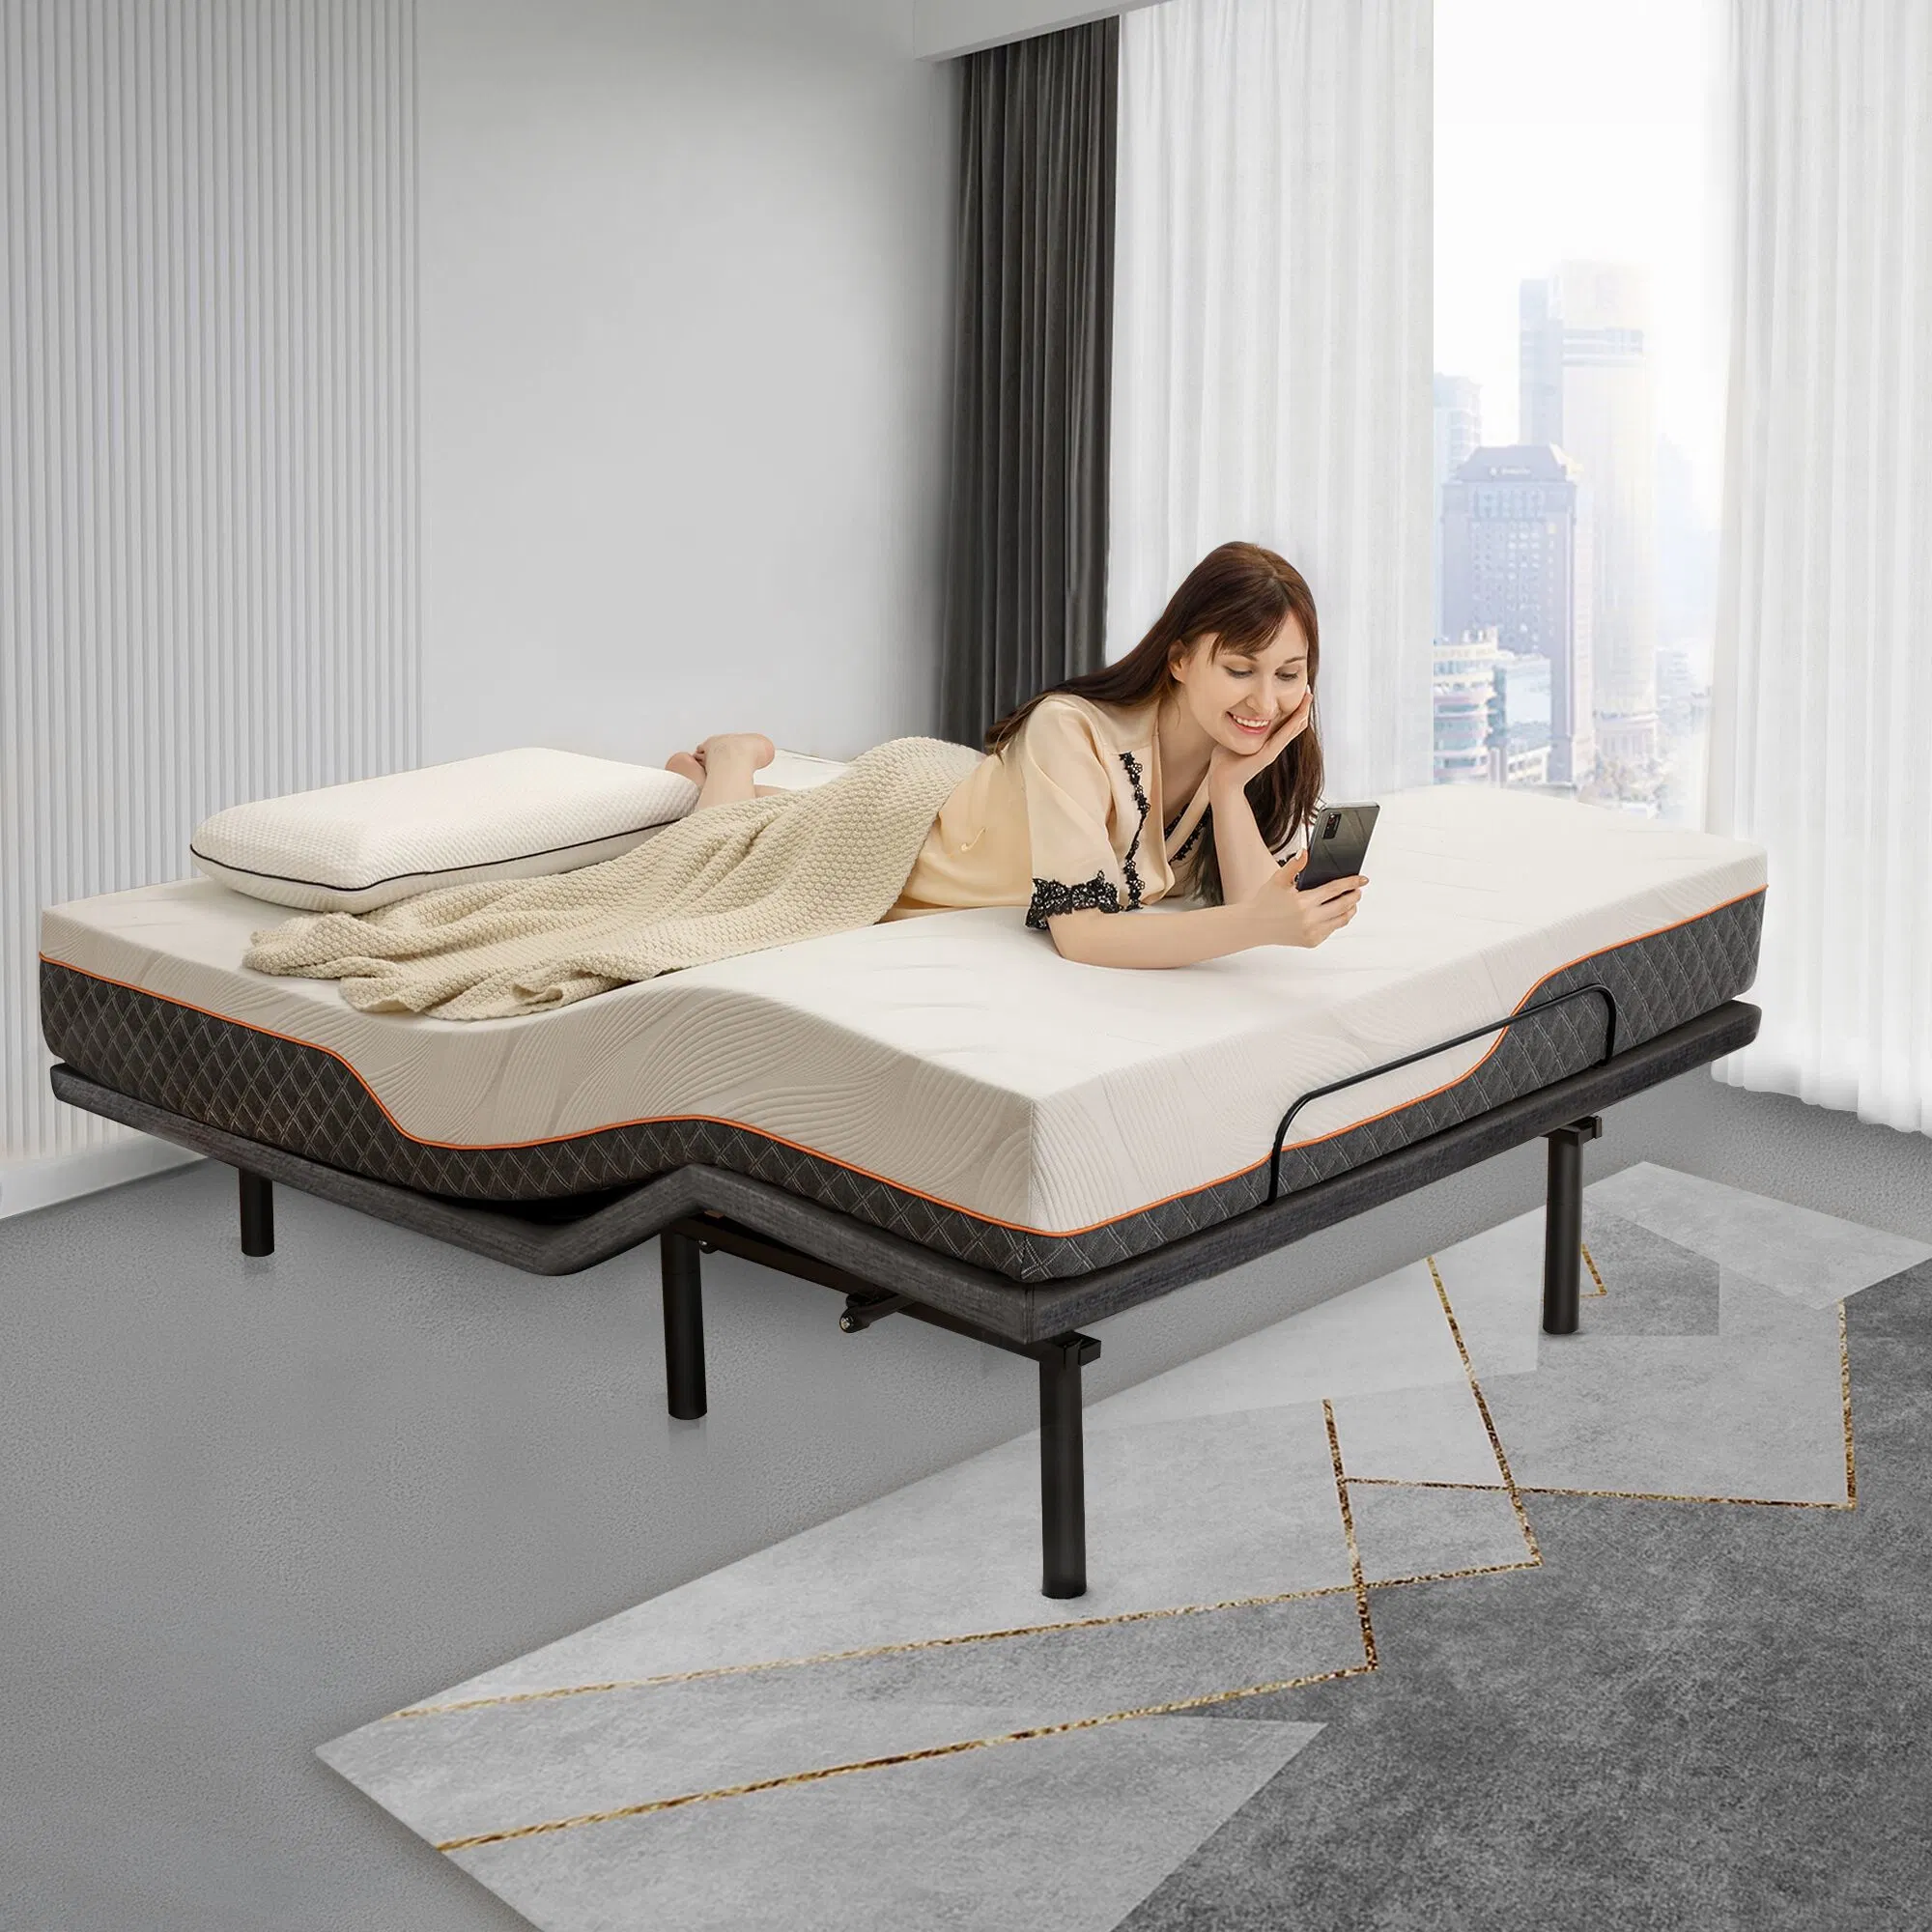 Inalámbrico de masaje plegables eléctricas XL doble cama ajustable Bastidor con colchón de espuma de memoria